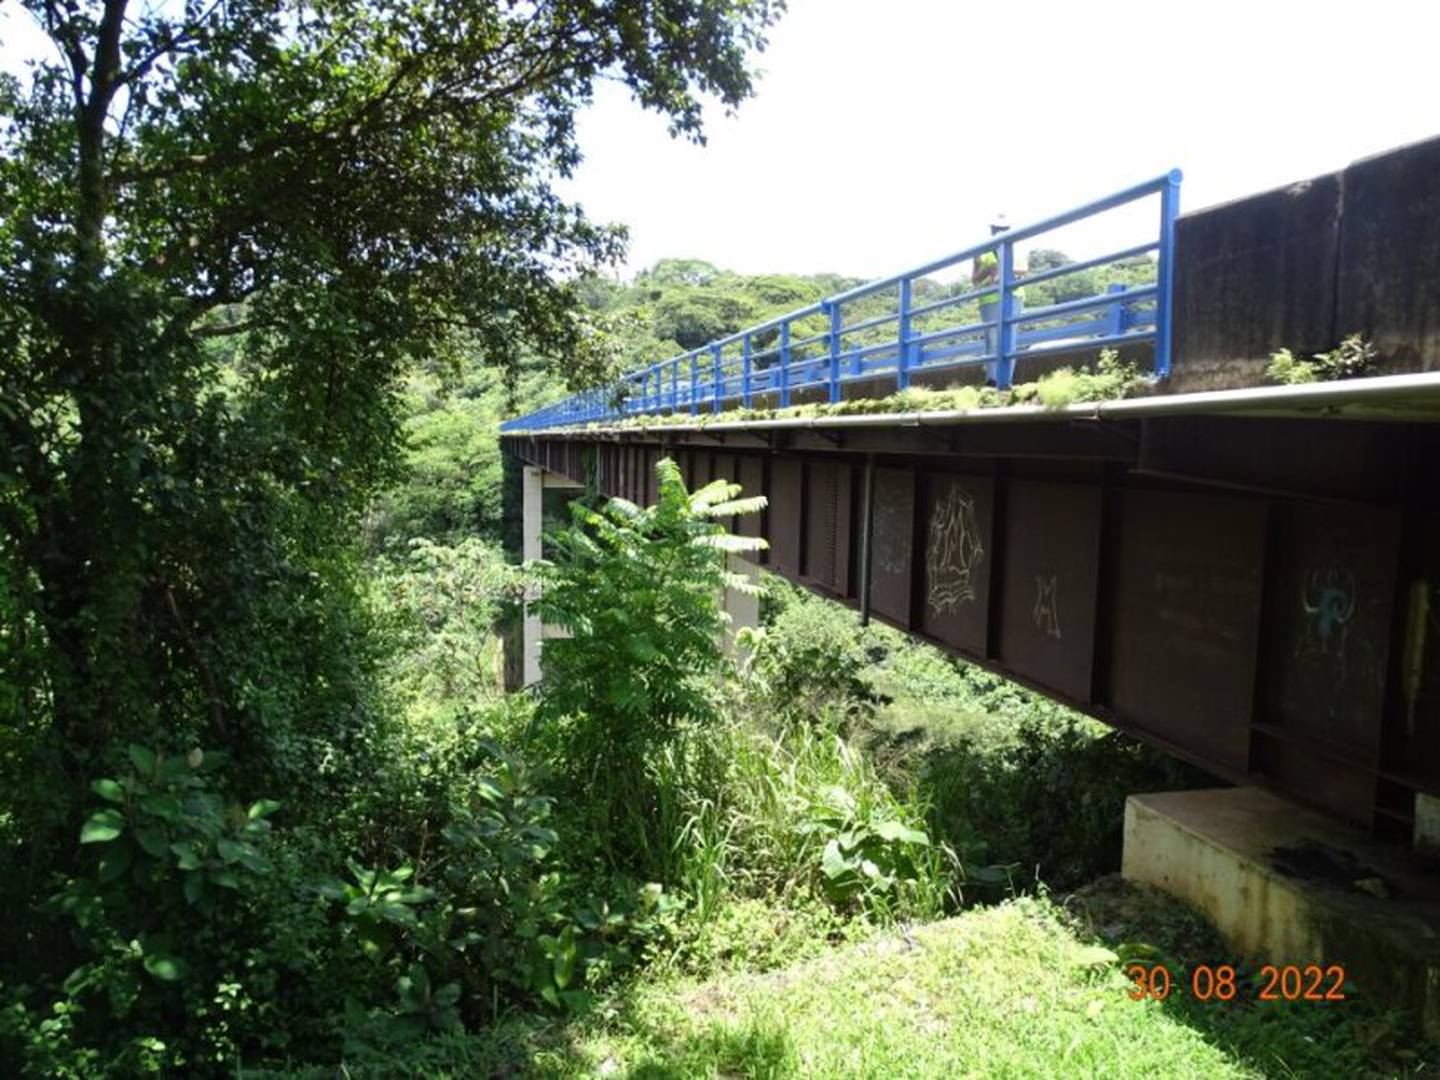 El puente sobre la Quebrada Salitral, en el kilómetro ruta 27, presenta una condición "alarmante" y requiere de una rehabilitación urgente, según Lanamme.